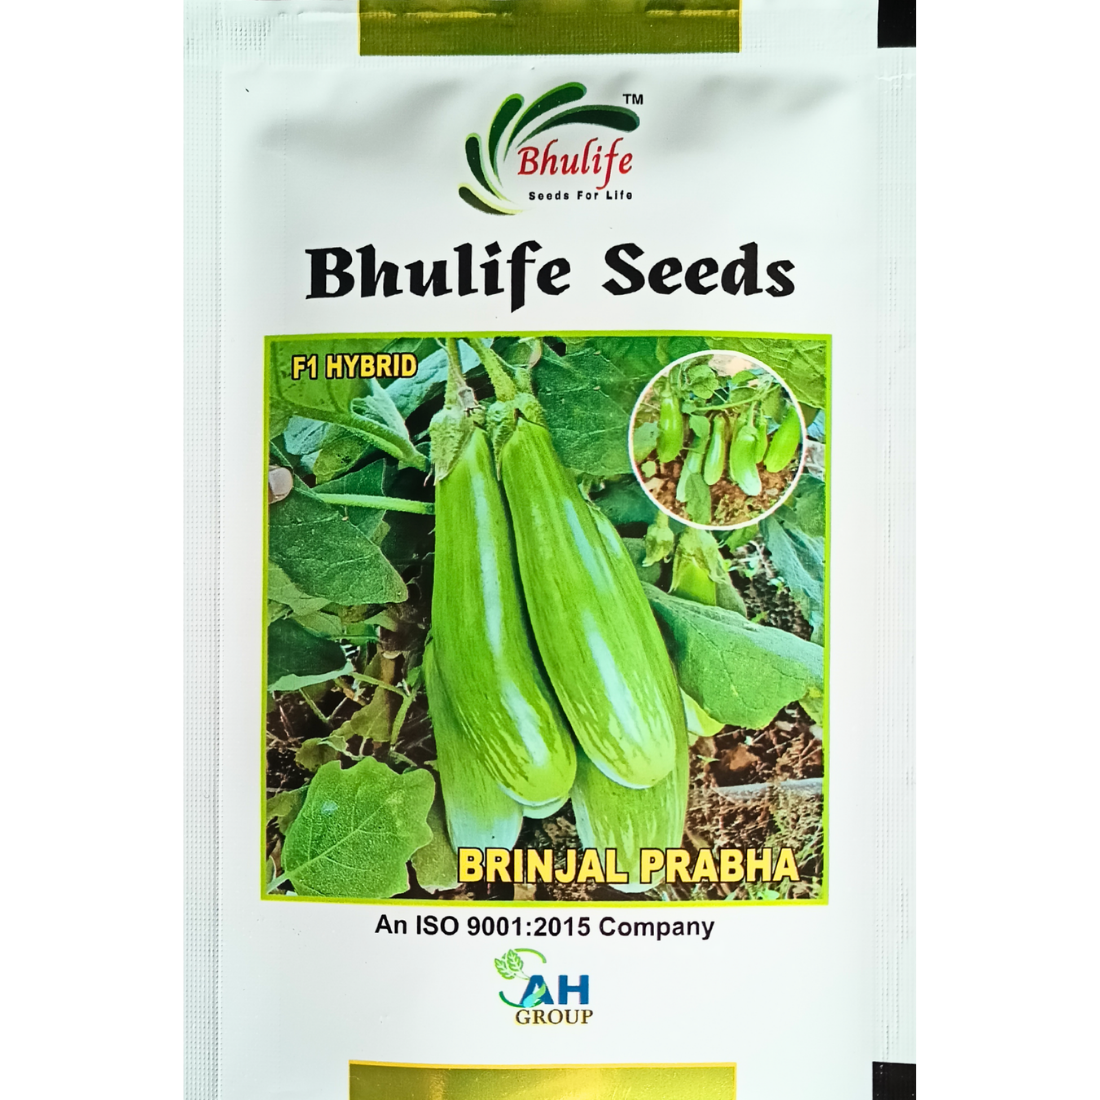 Bhulife Seeds Brinjal Seeds Prabha